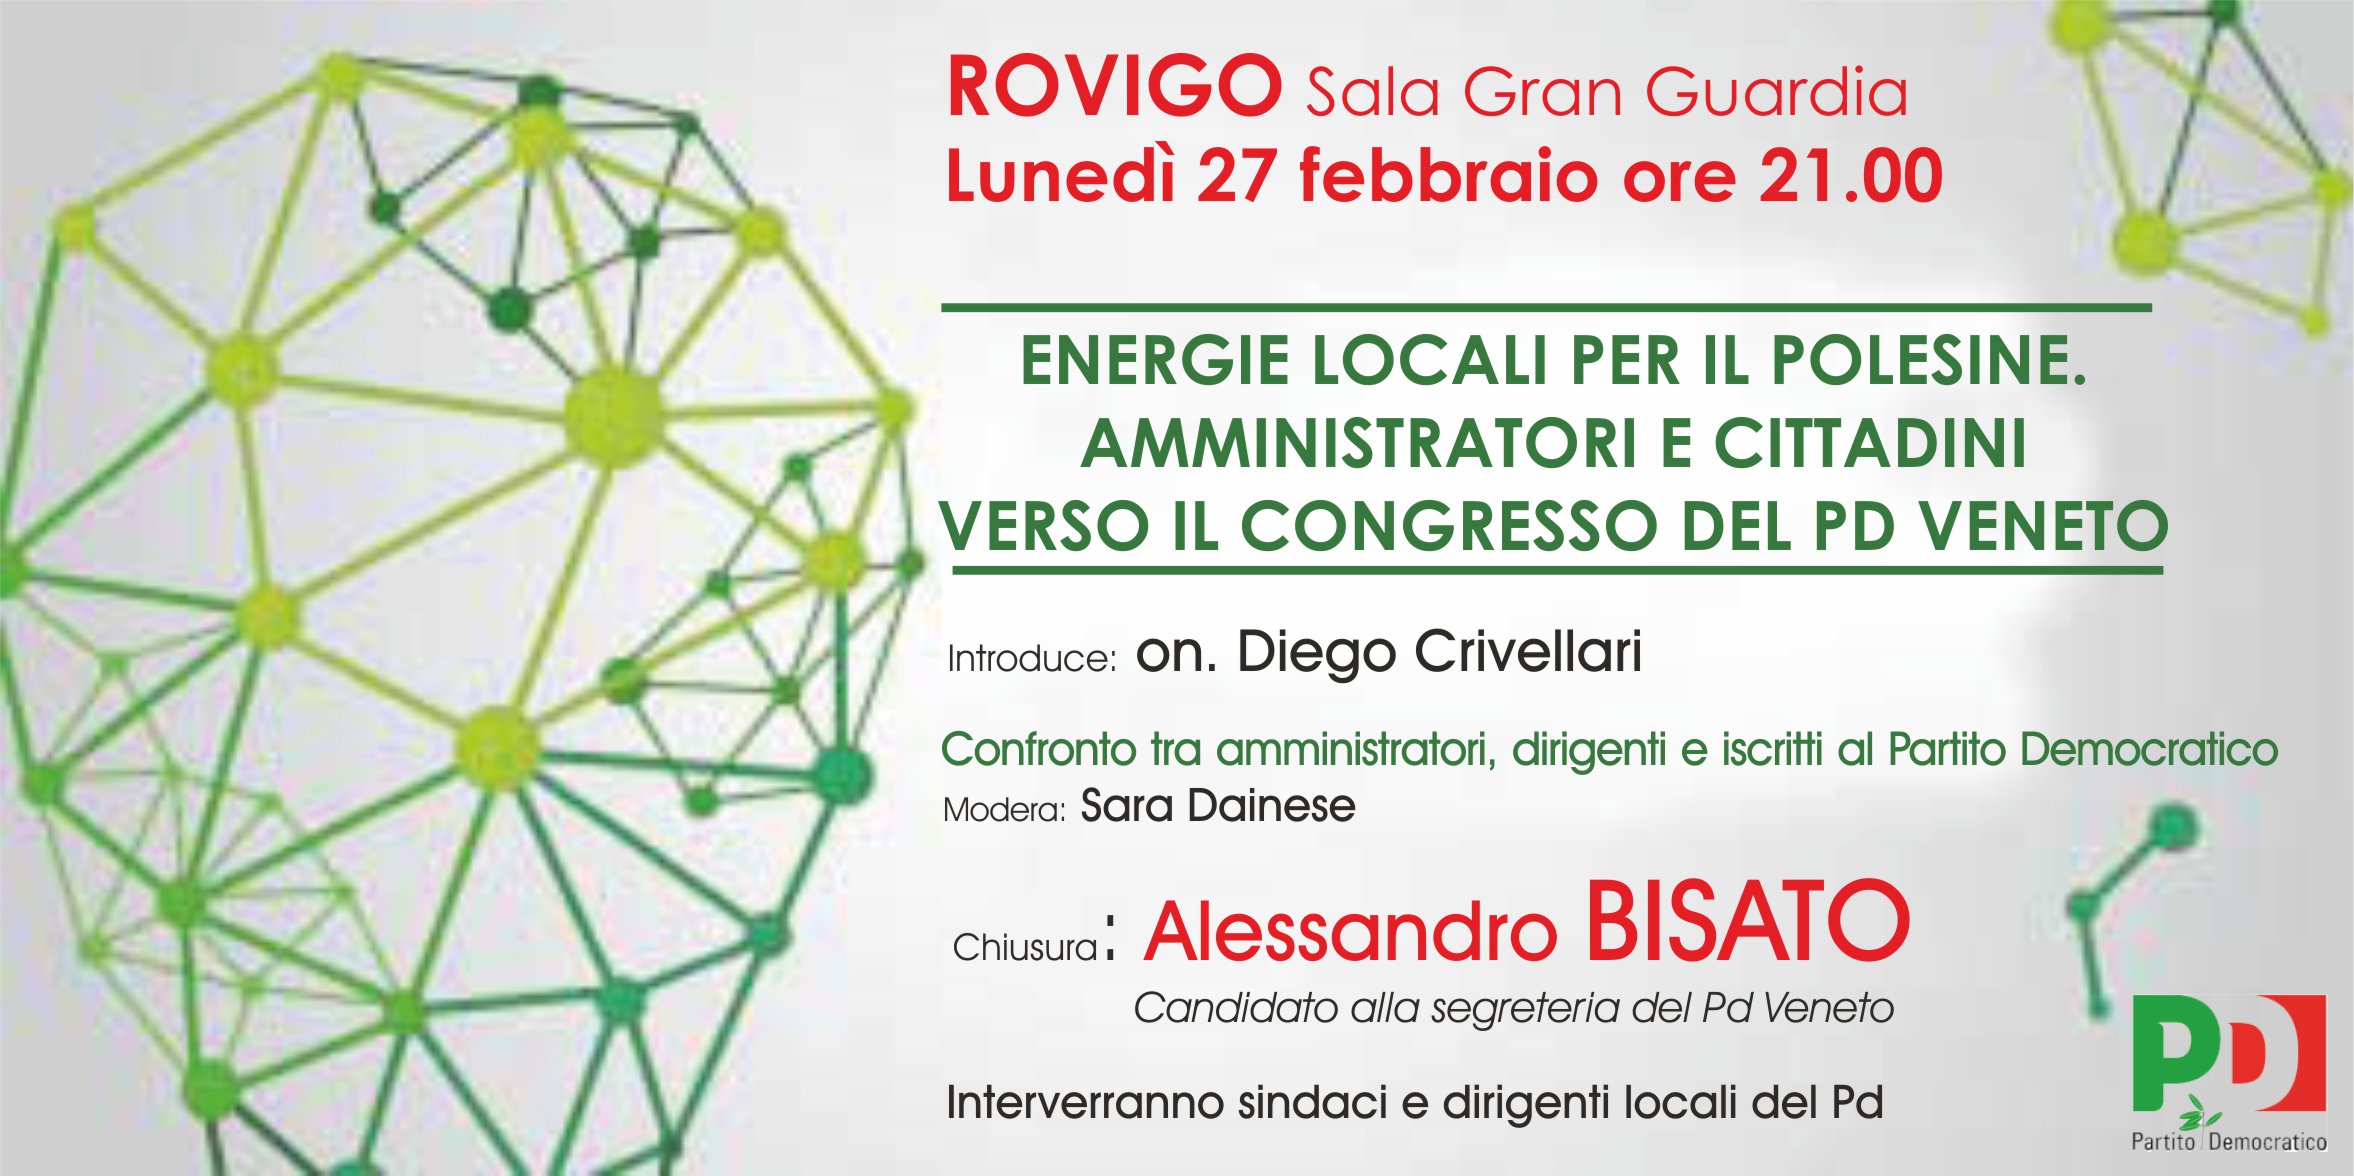 Al momento stai visualizzando Energie locali per il Polesine Amministratori e cittadini verso il congresso per il PD Veneto